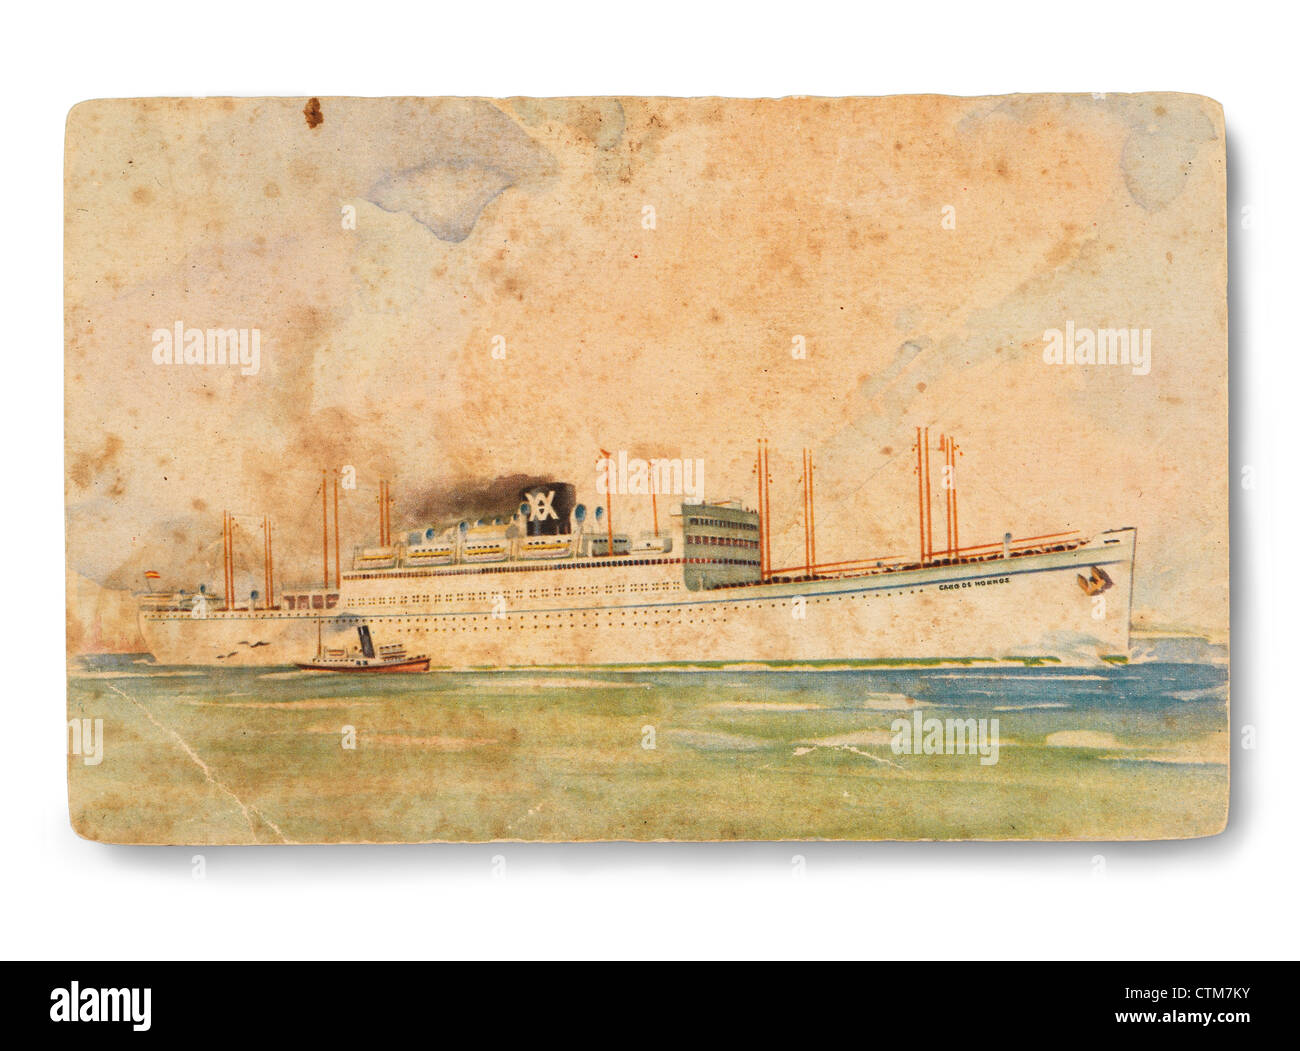 Carte postale espagnole de Ybarra Ship Line Company qui a pris l'Amérique du Sud de la ligne de voyage dans les années 40 et 50 du siècle dernier. Banque D'Images